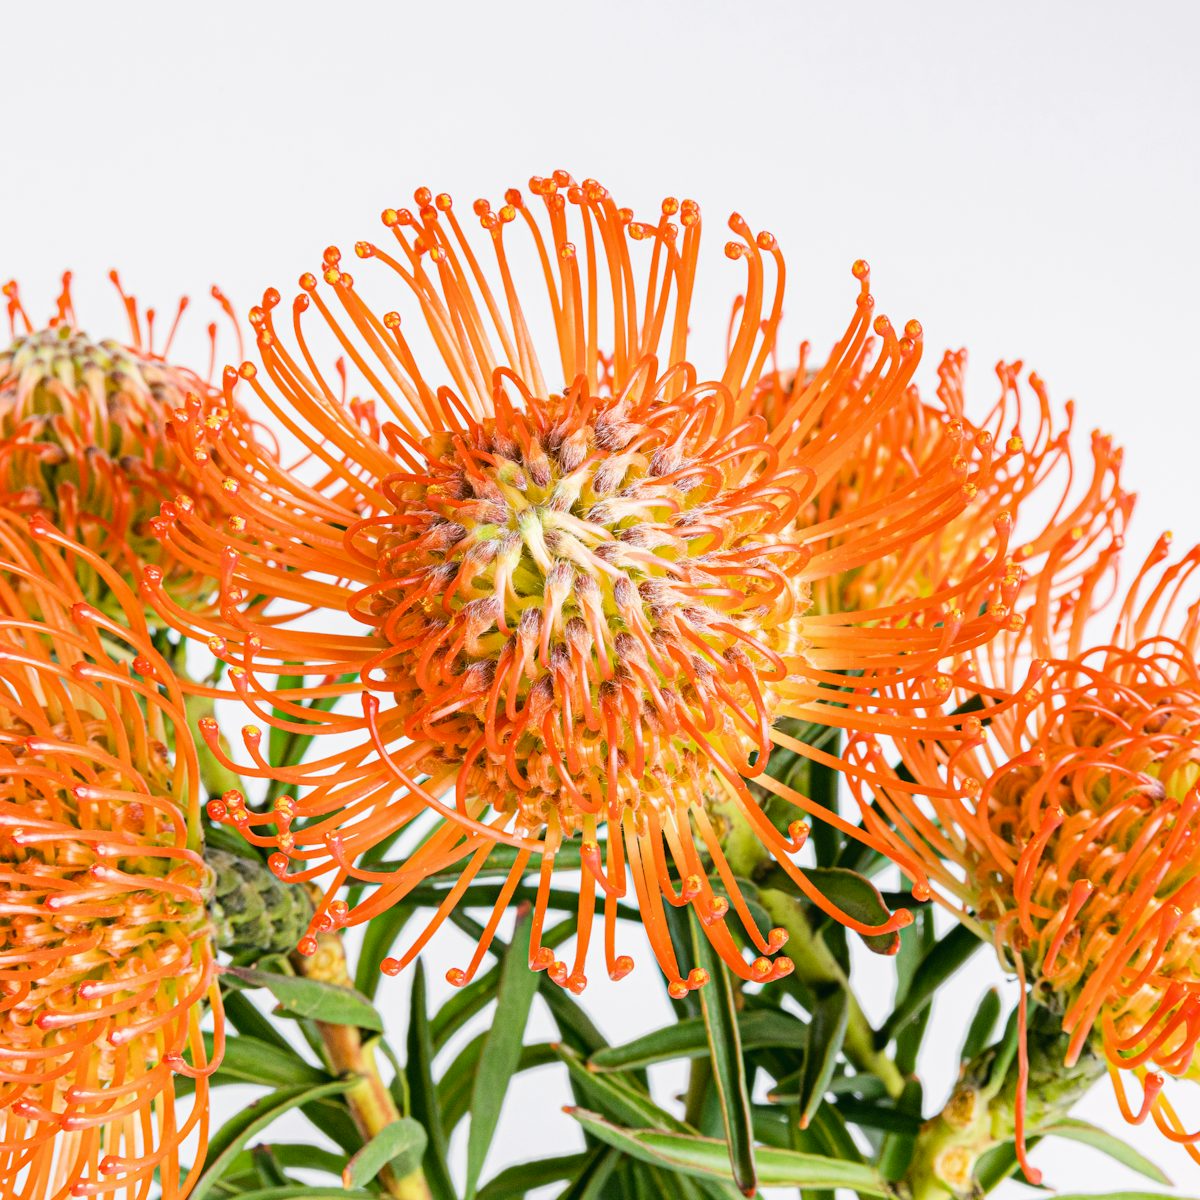 Protea bouquet